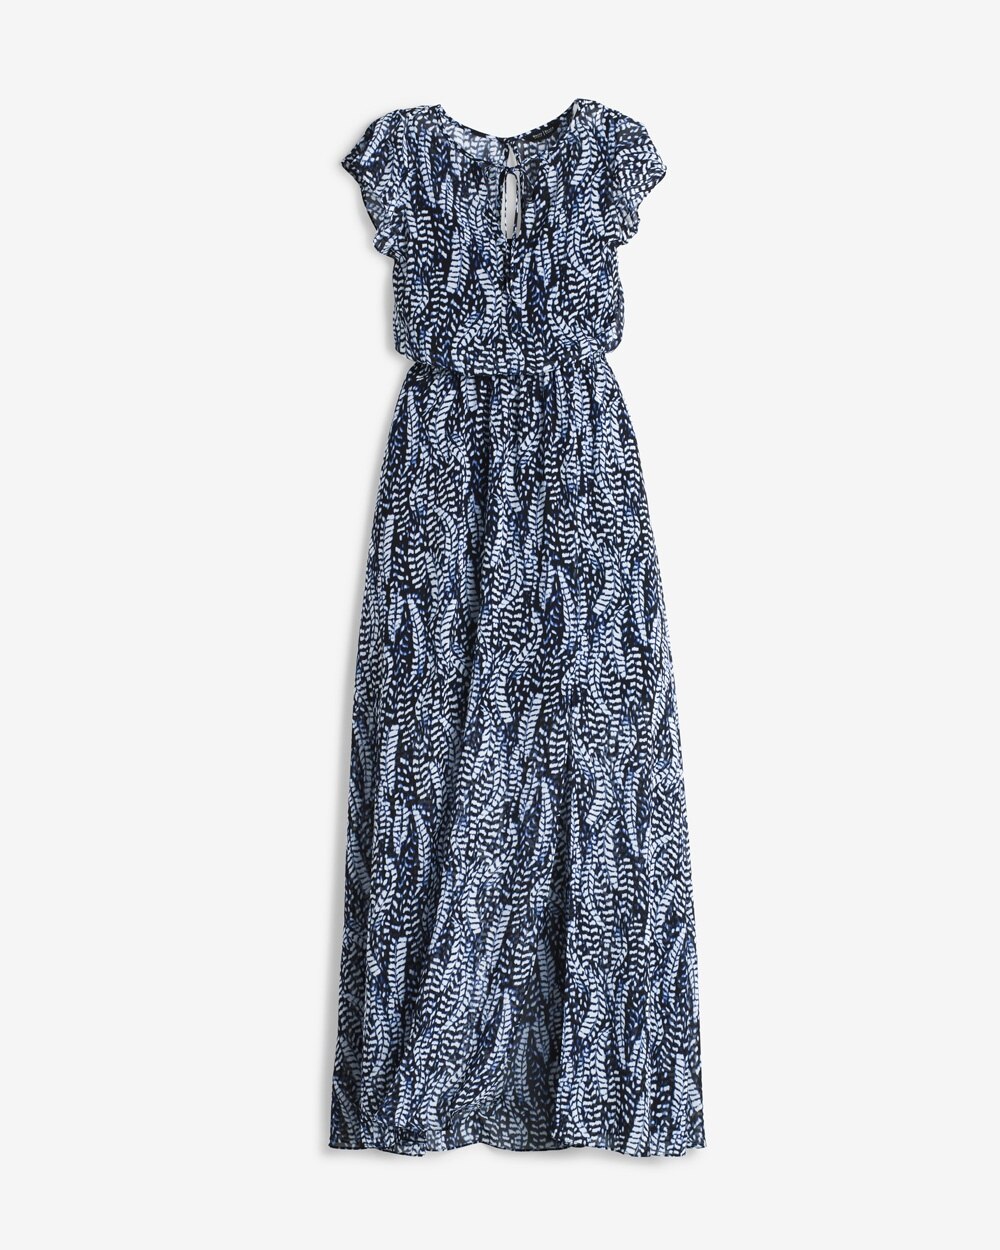 Feather Print Maxi Dress - White House Black Market